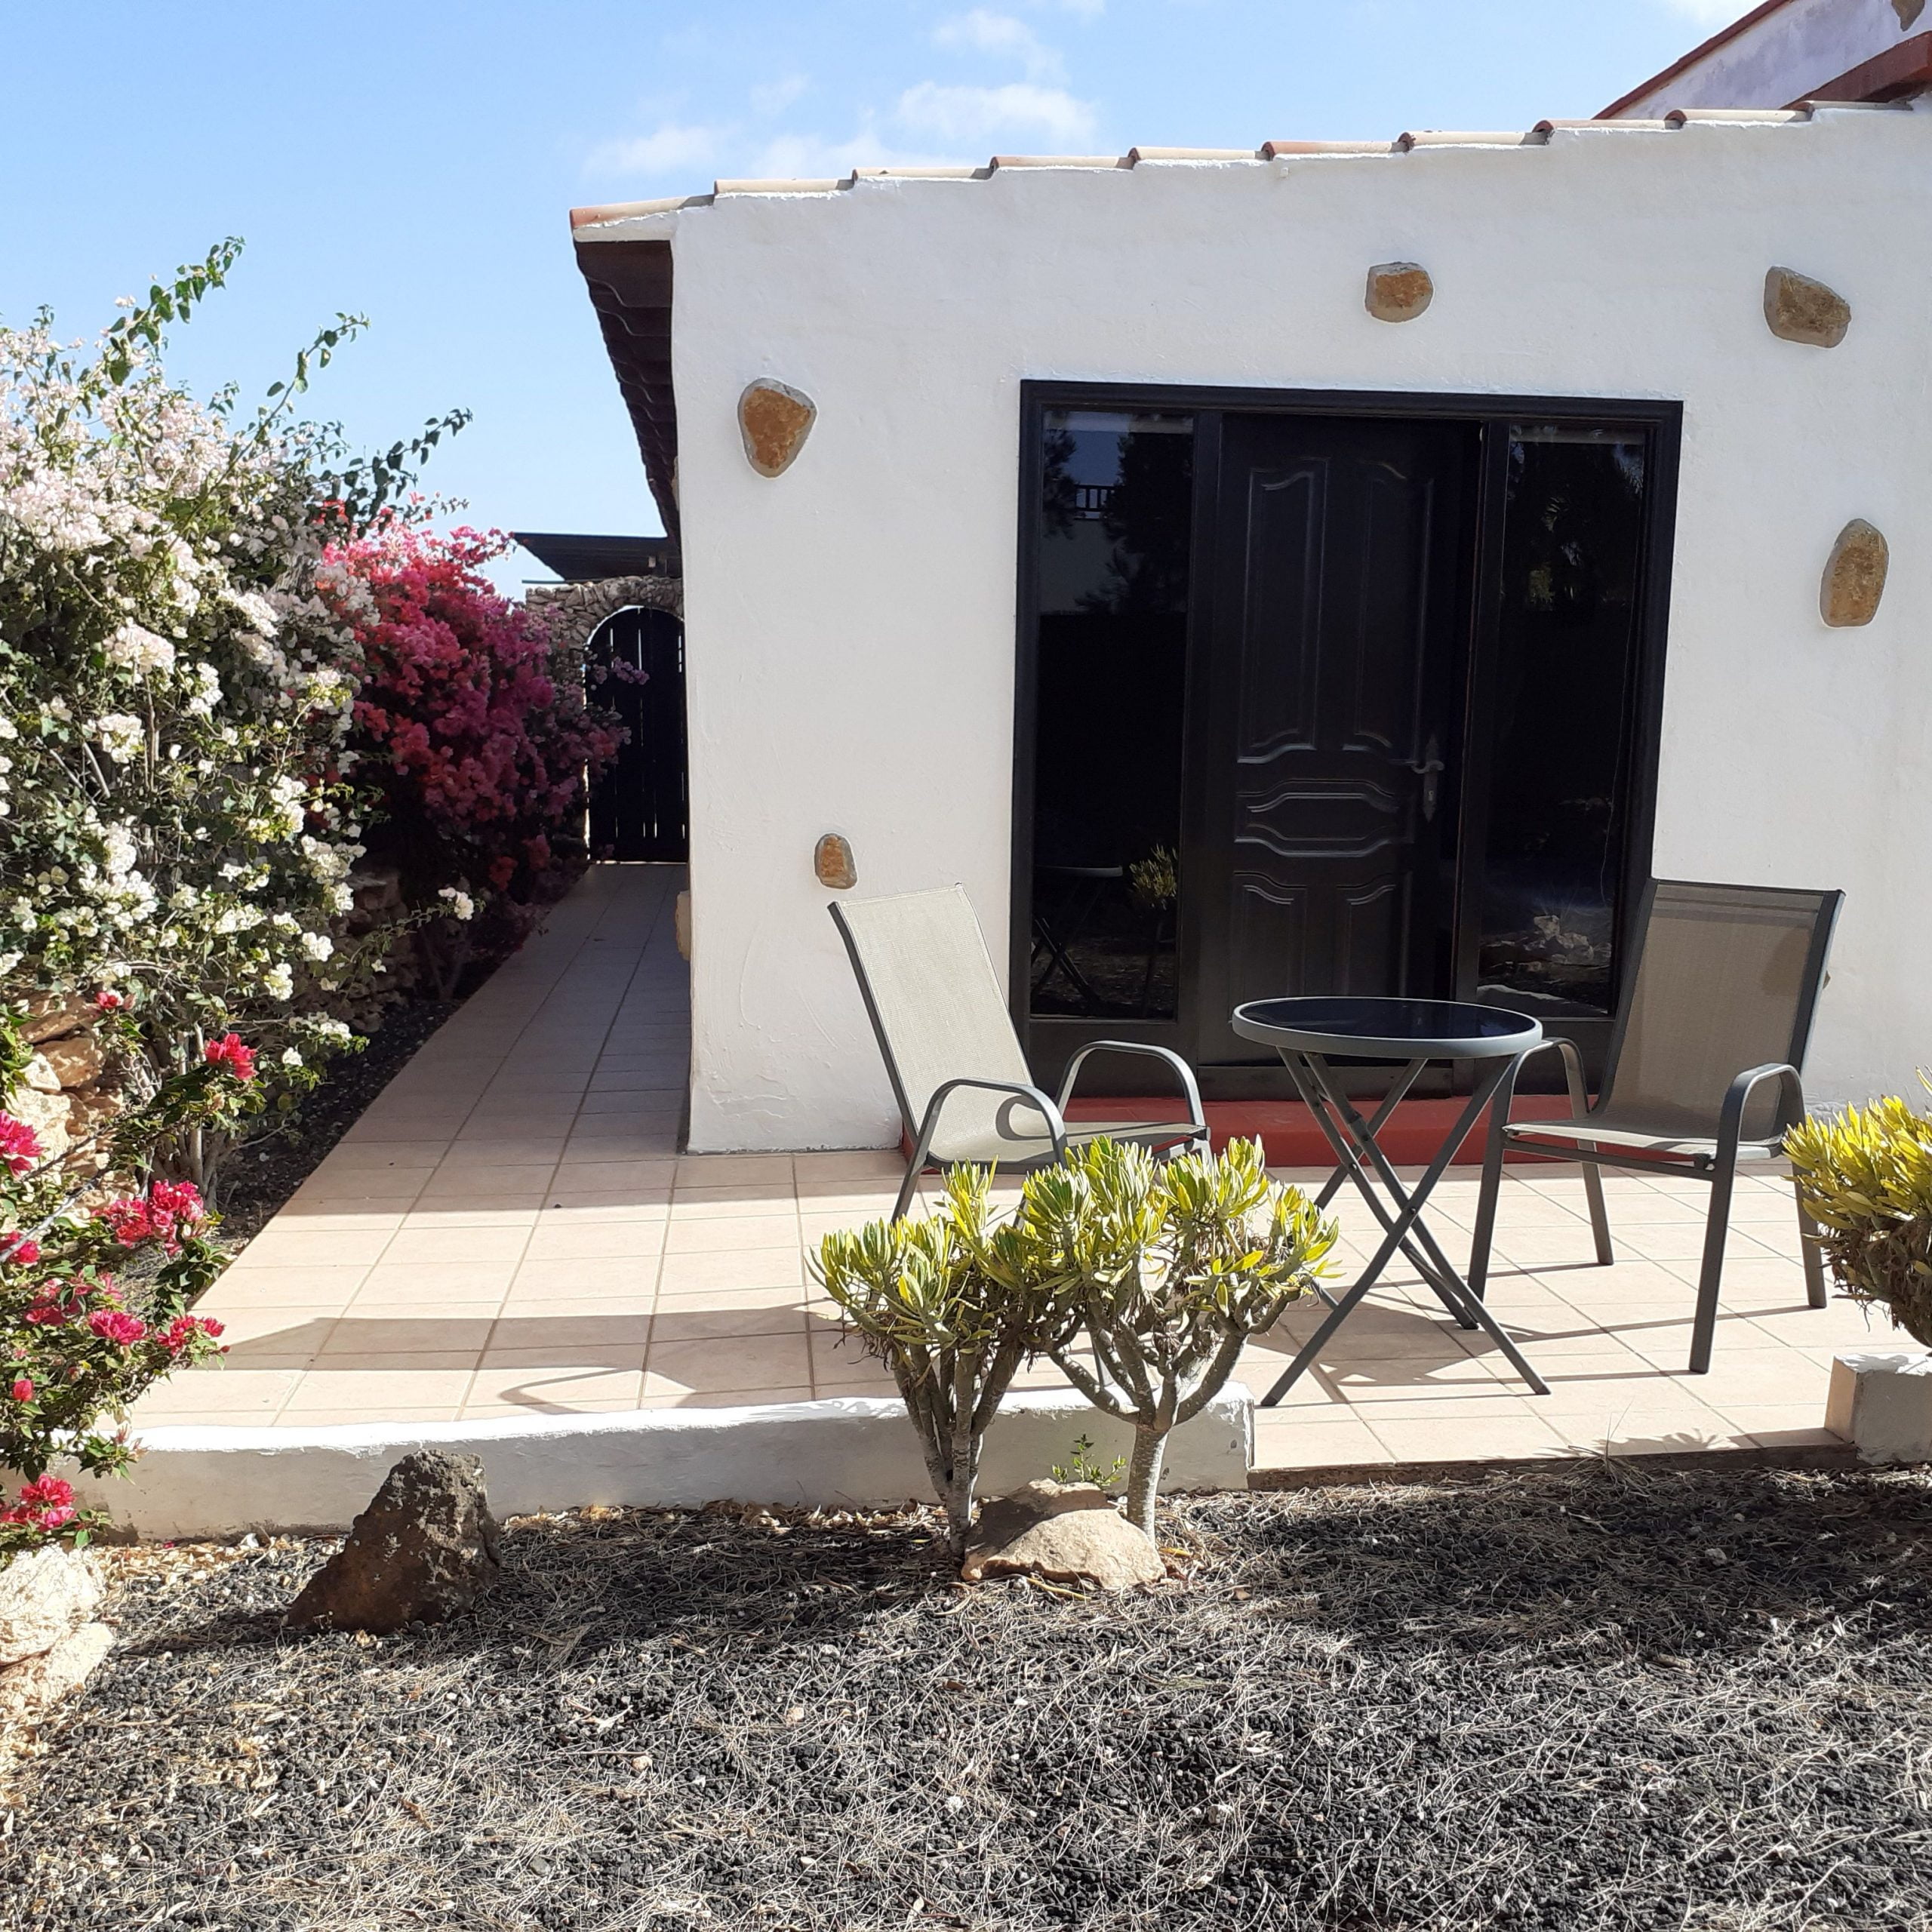 Villa Vital - Coliving para expats en Fuerteventura